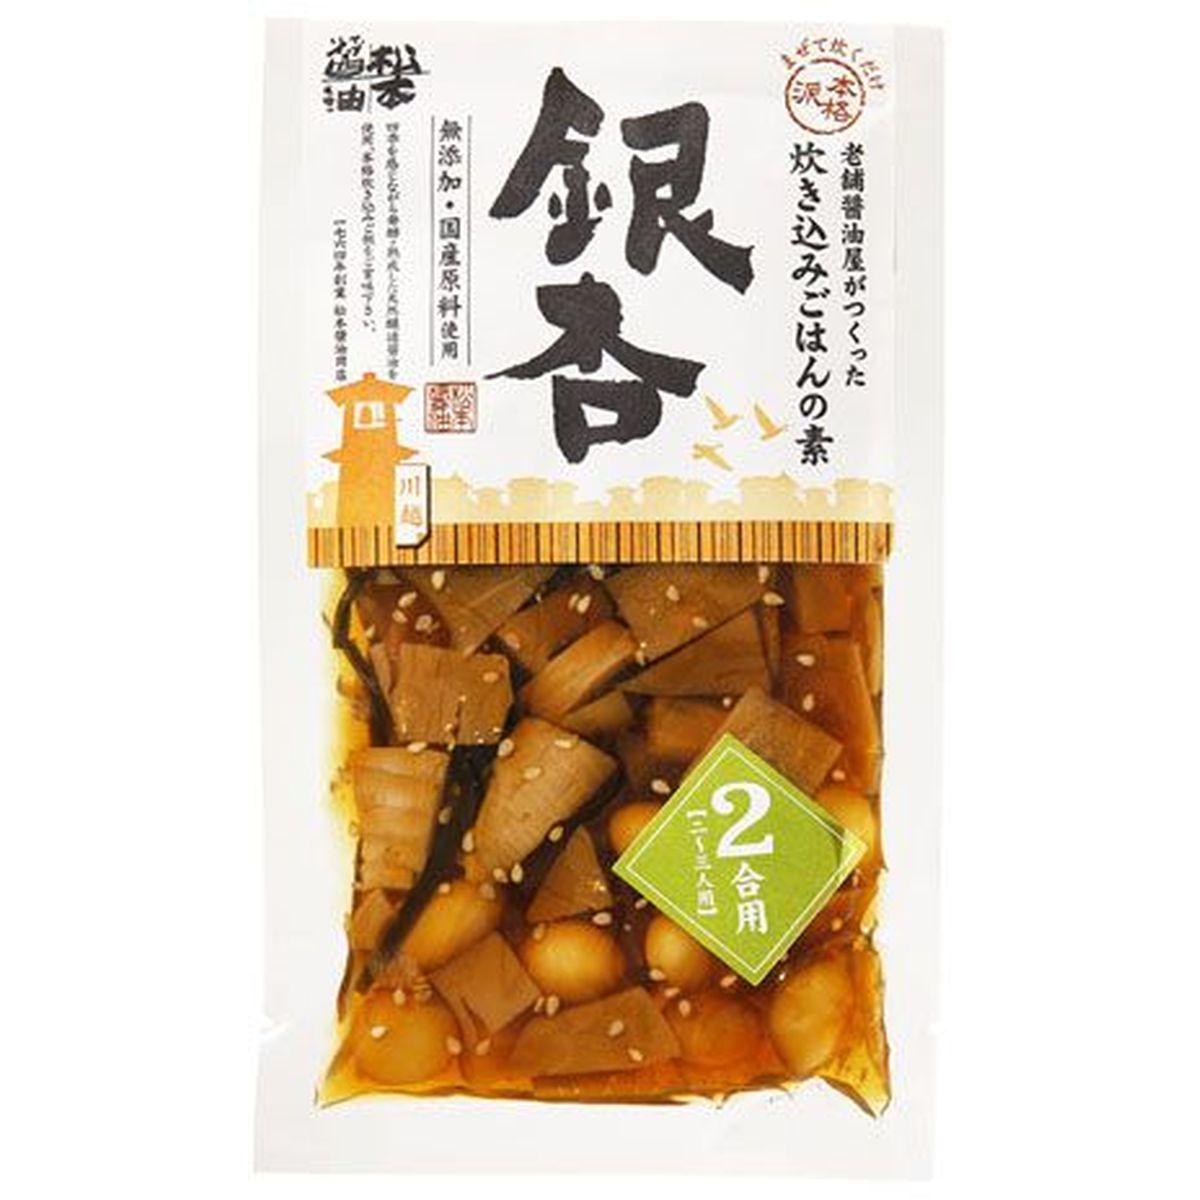 【20個入リ】松本醤油 炊キ込ミゴ飯ノ素2合用ギンナン 90g